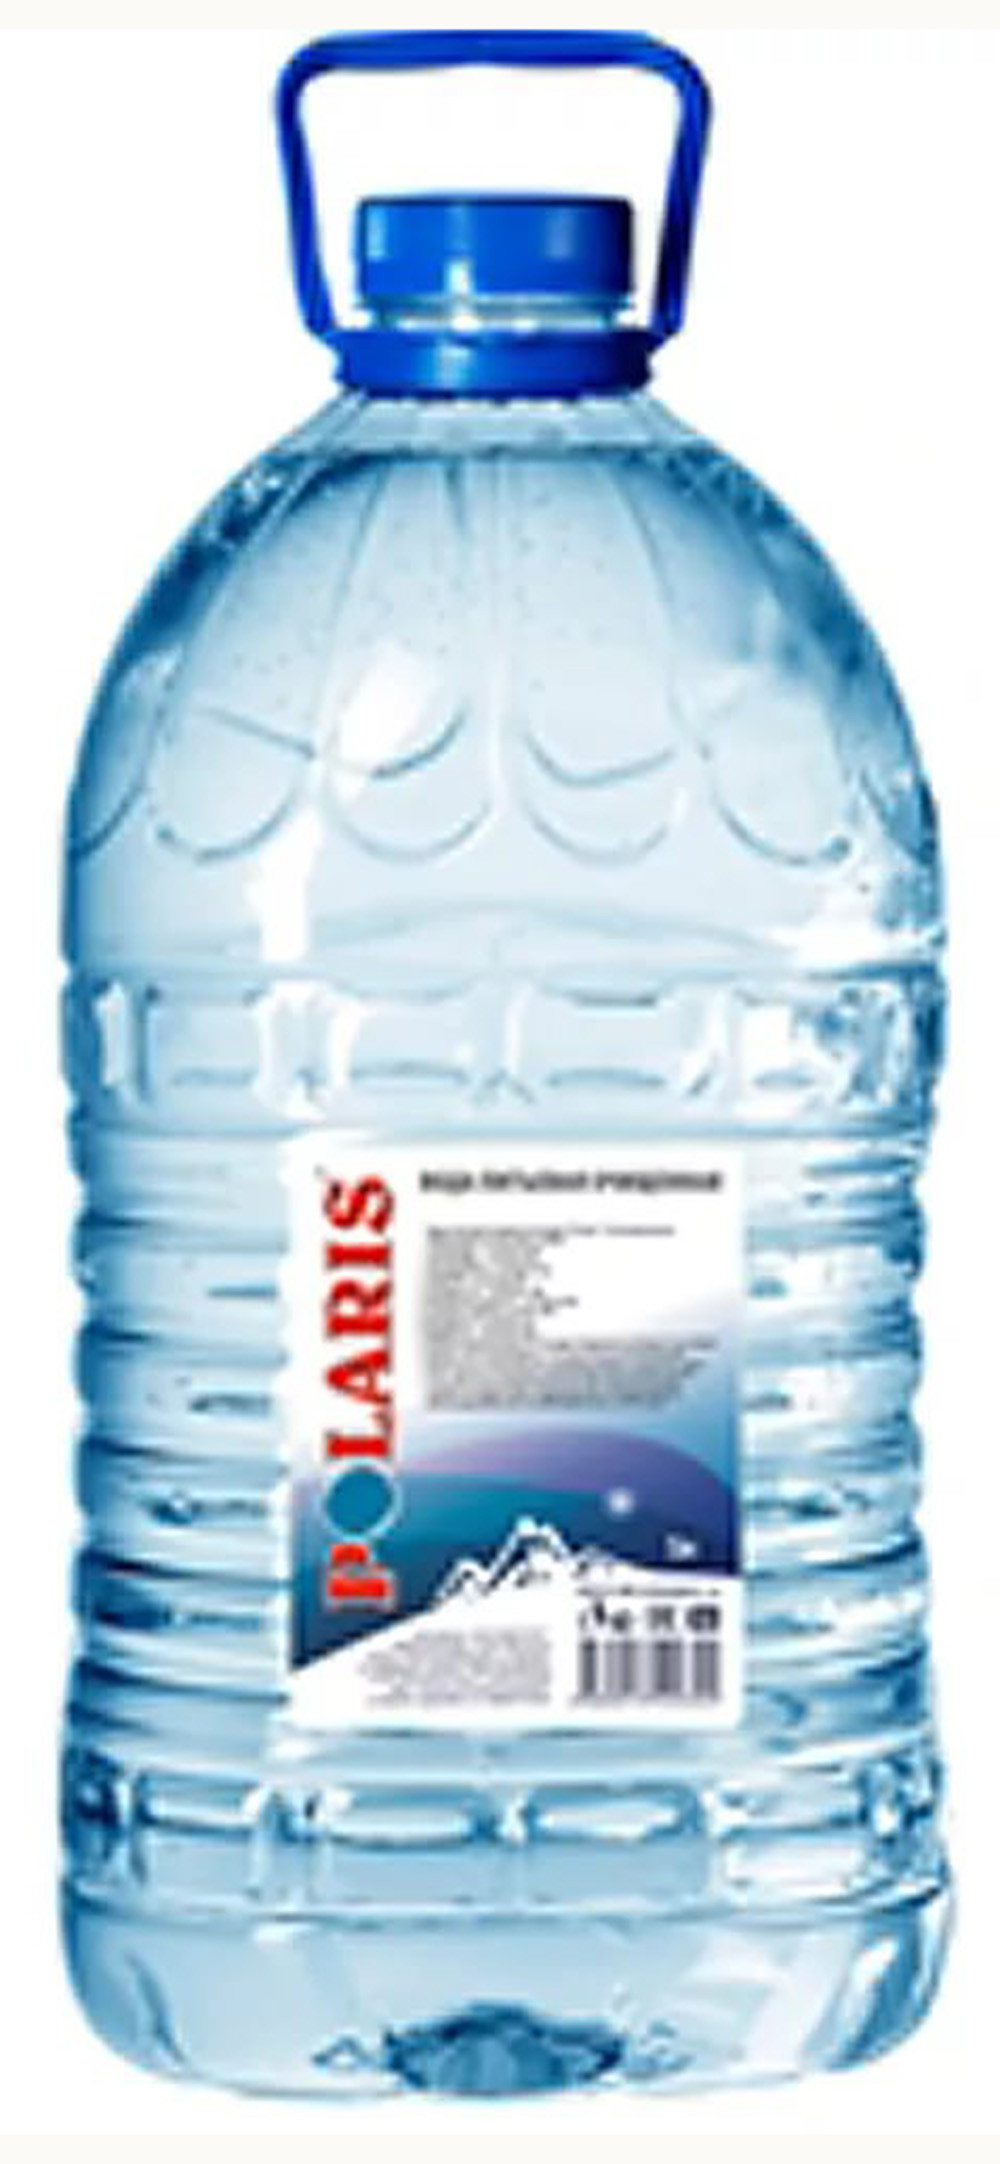 Питьевая вода 6 литров. Поларис питьевая вода 5 л. Вода Polaris 5л. Вода Поларис 5 литров. Вода питьевая 5 литров Поларис.